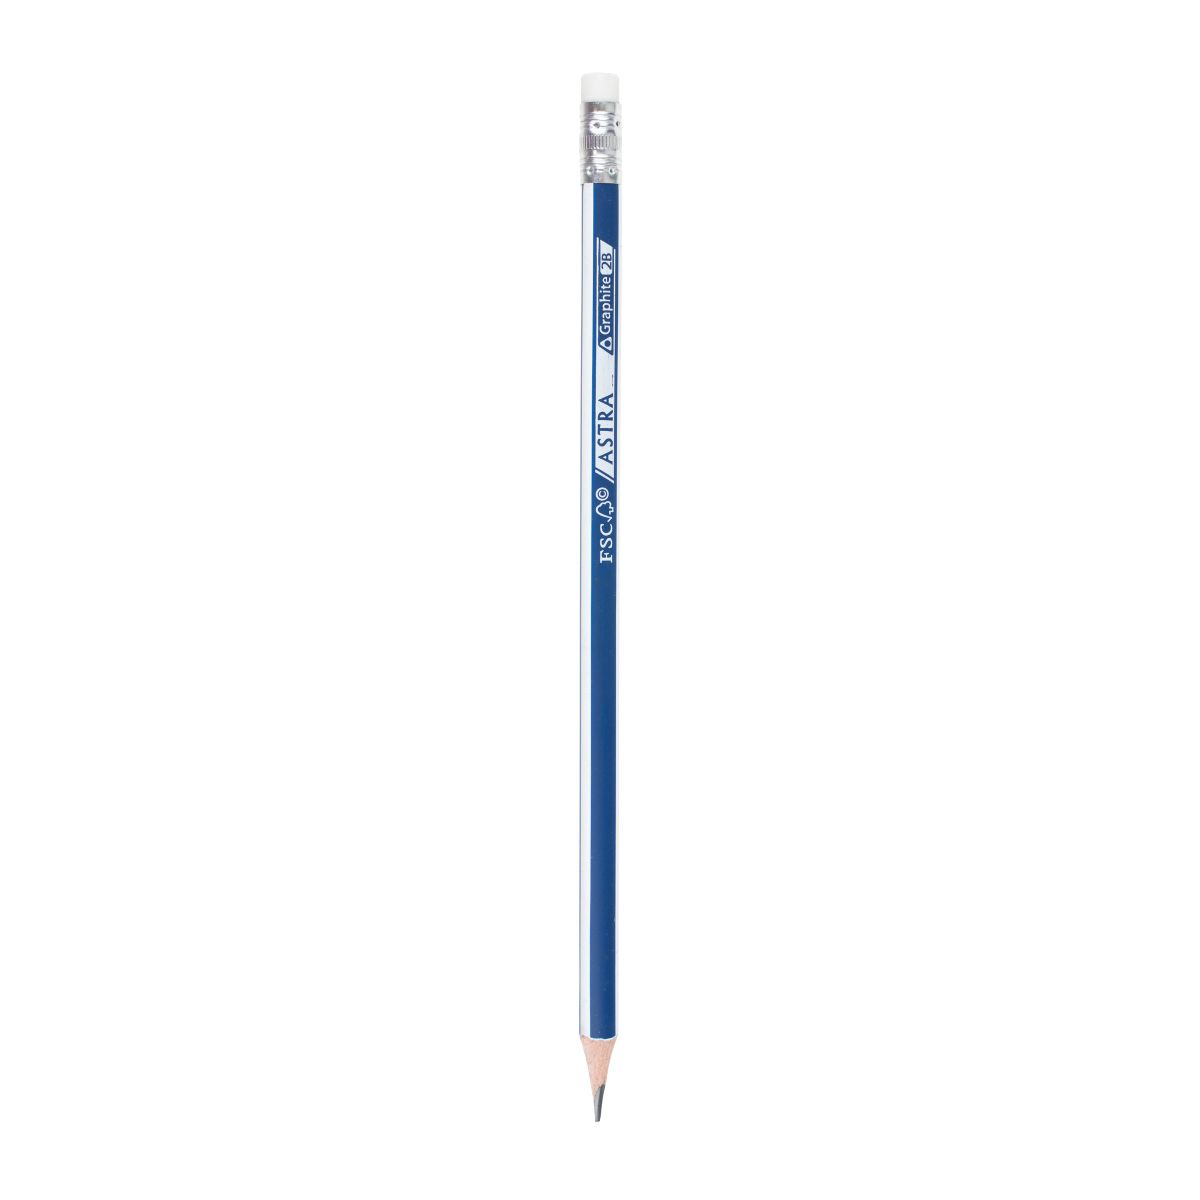 Ołówek Astra 2B (206120017)